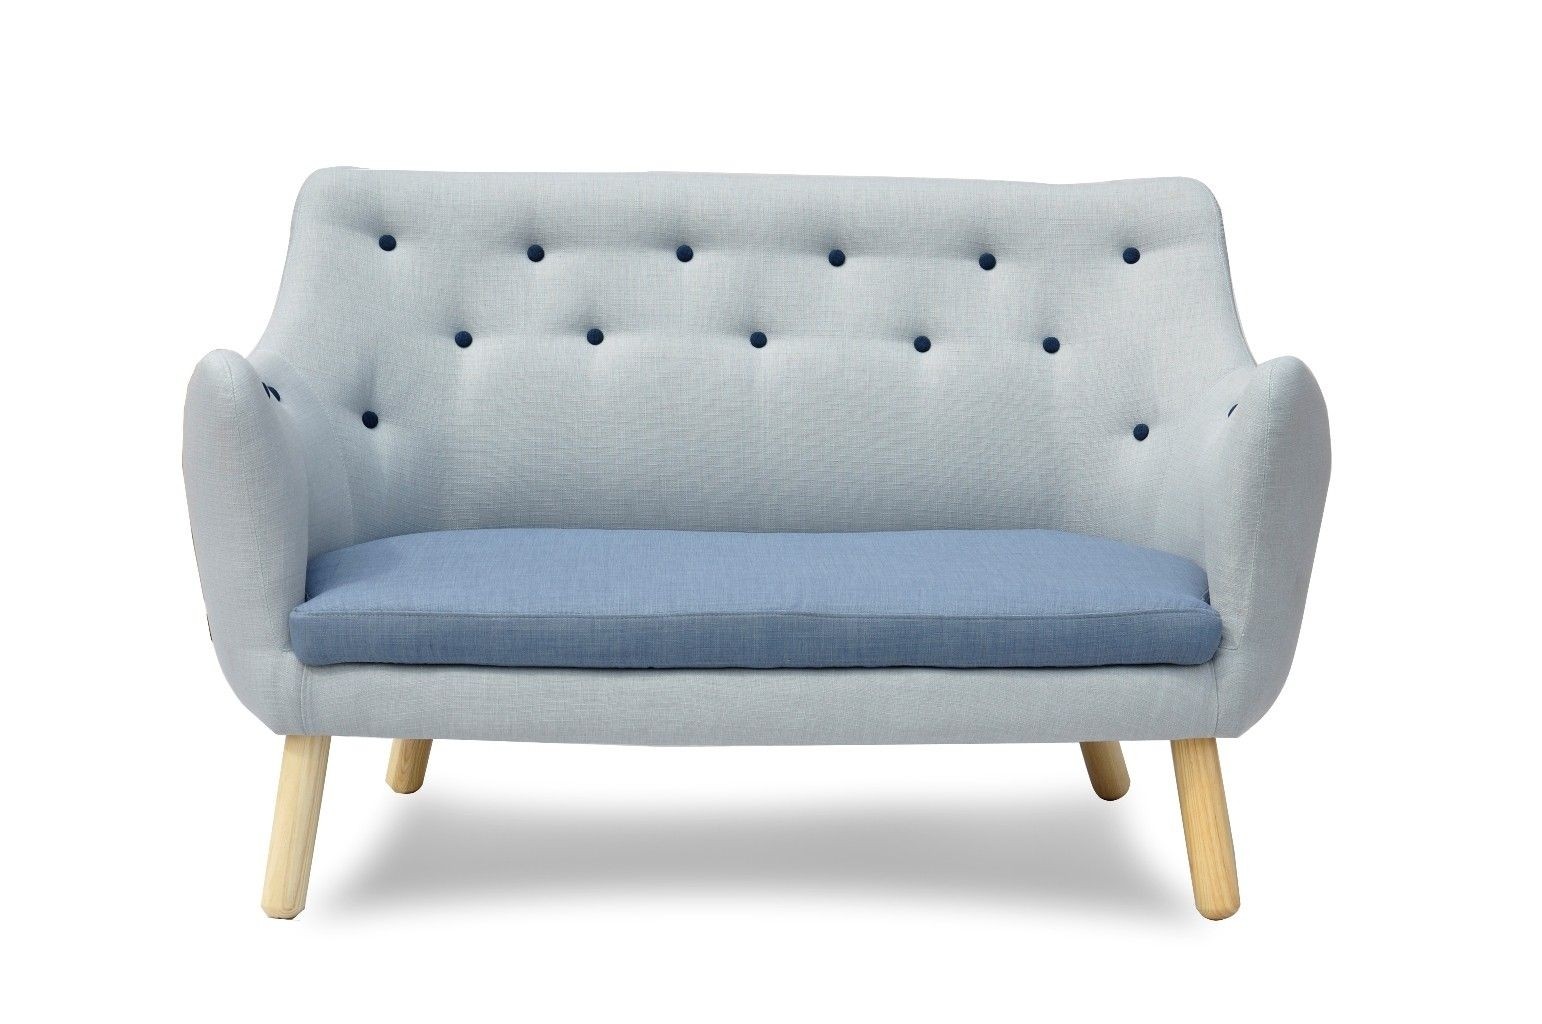 Sky blue poet linen sofa by international design zulily zulilyfinds